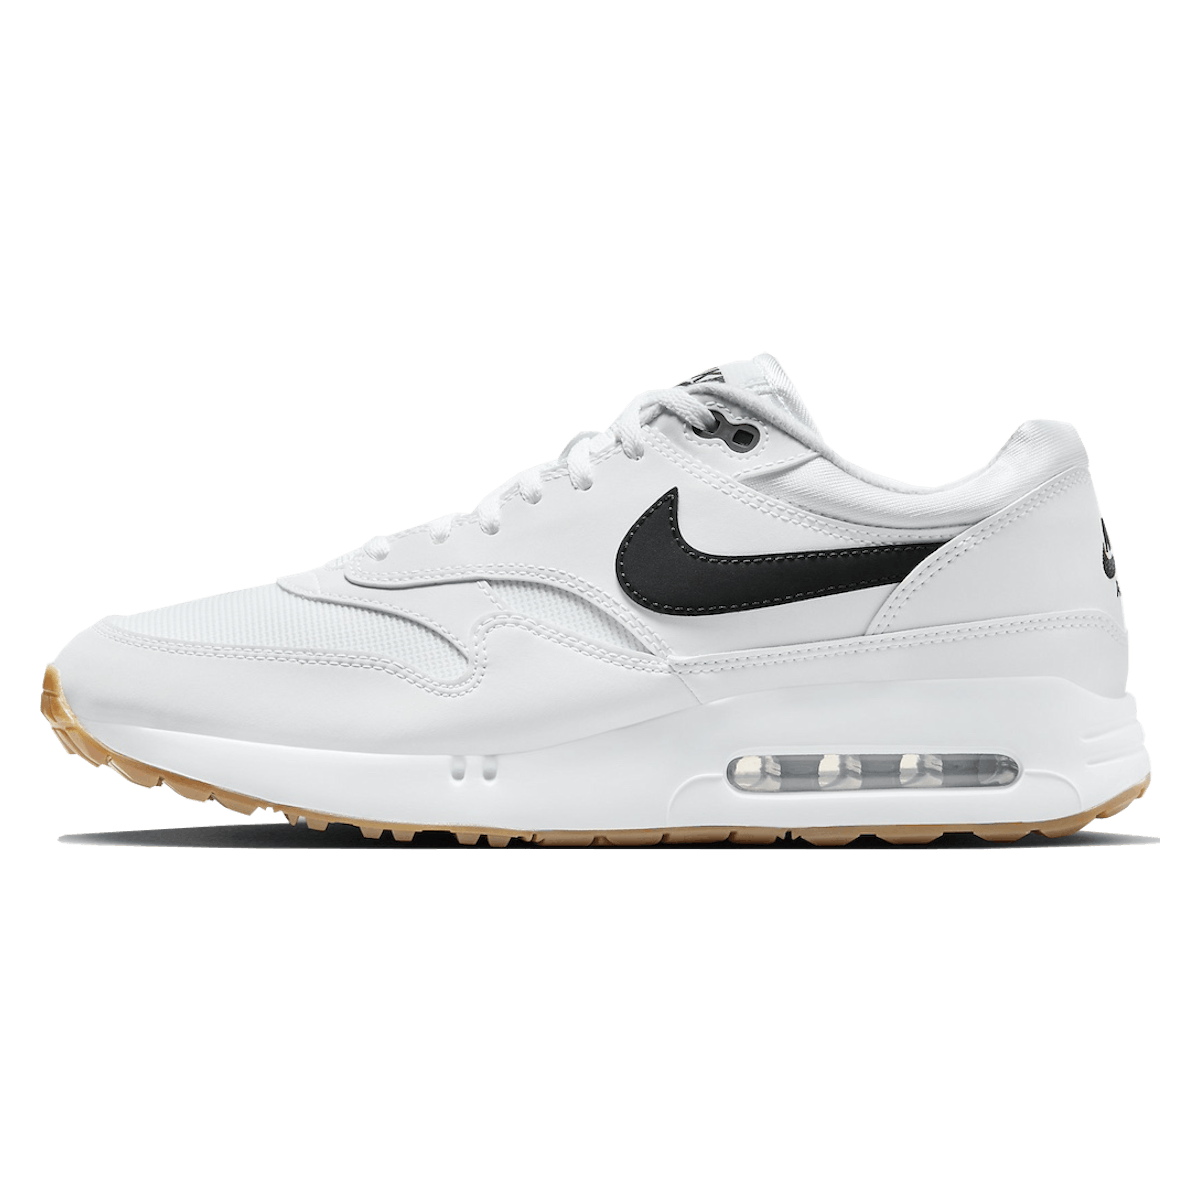 Nike Air Max 1 ’86 OG Golf "White Gum"